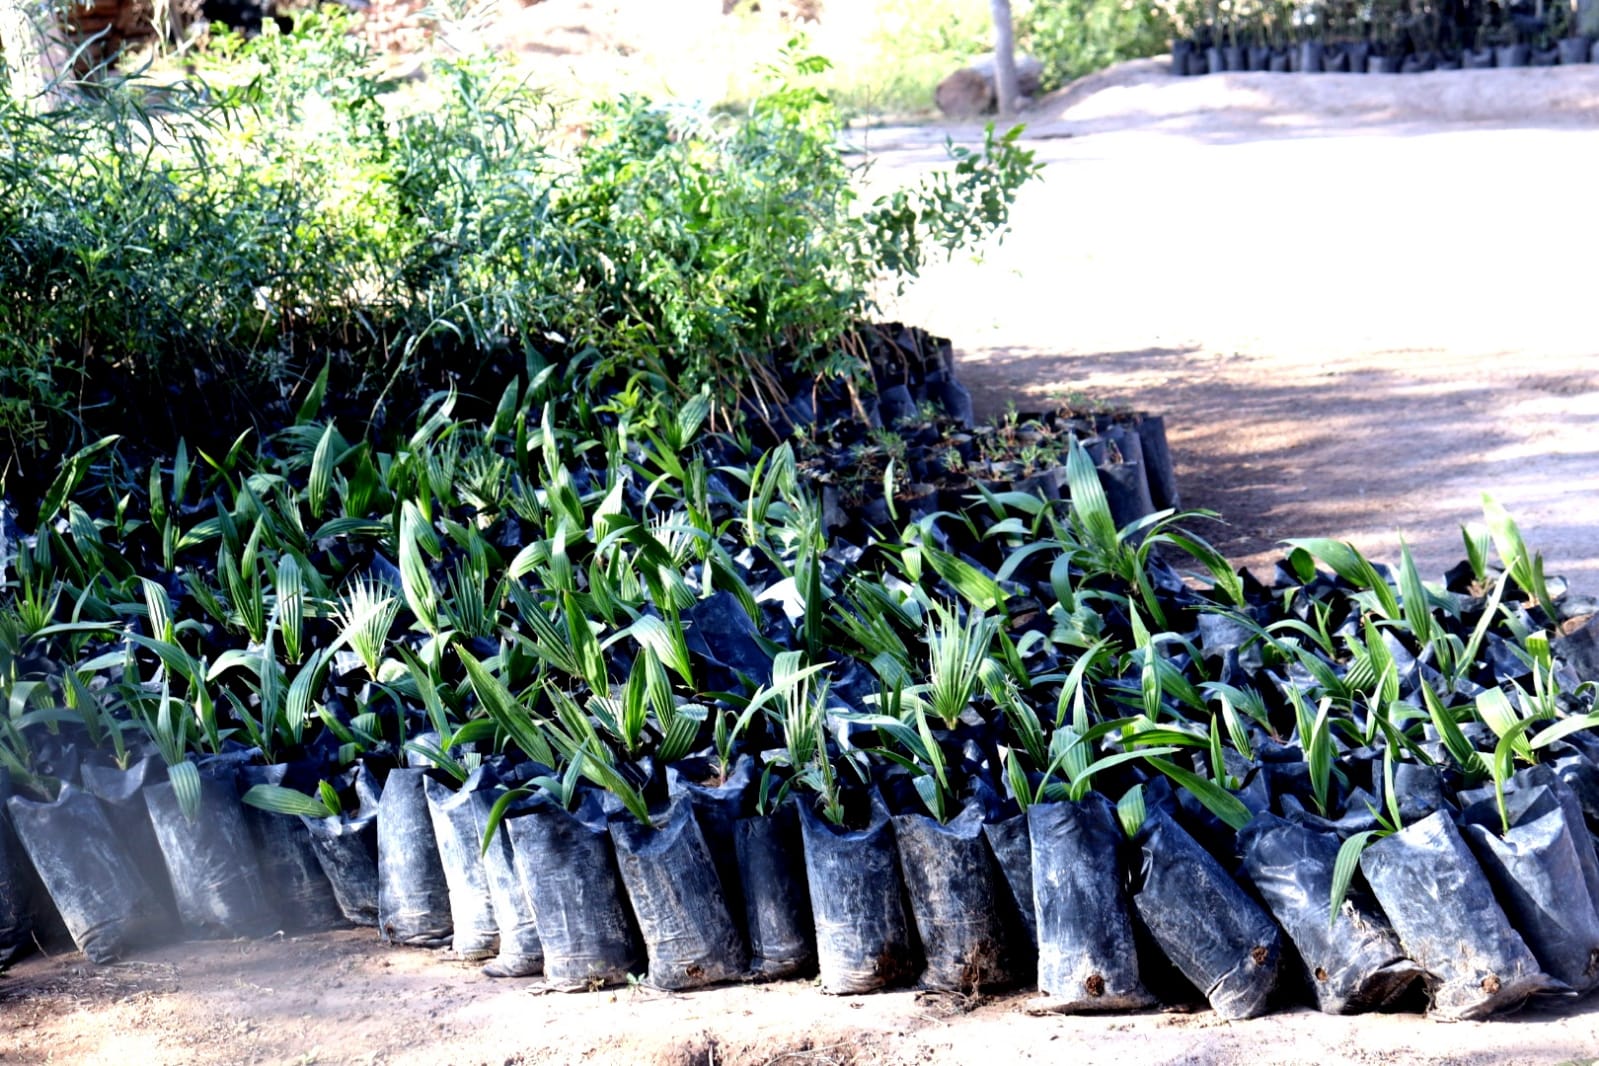 Peñoles regala 4,500 árboles al municipio de San Pedro